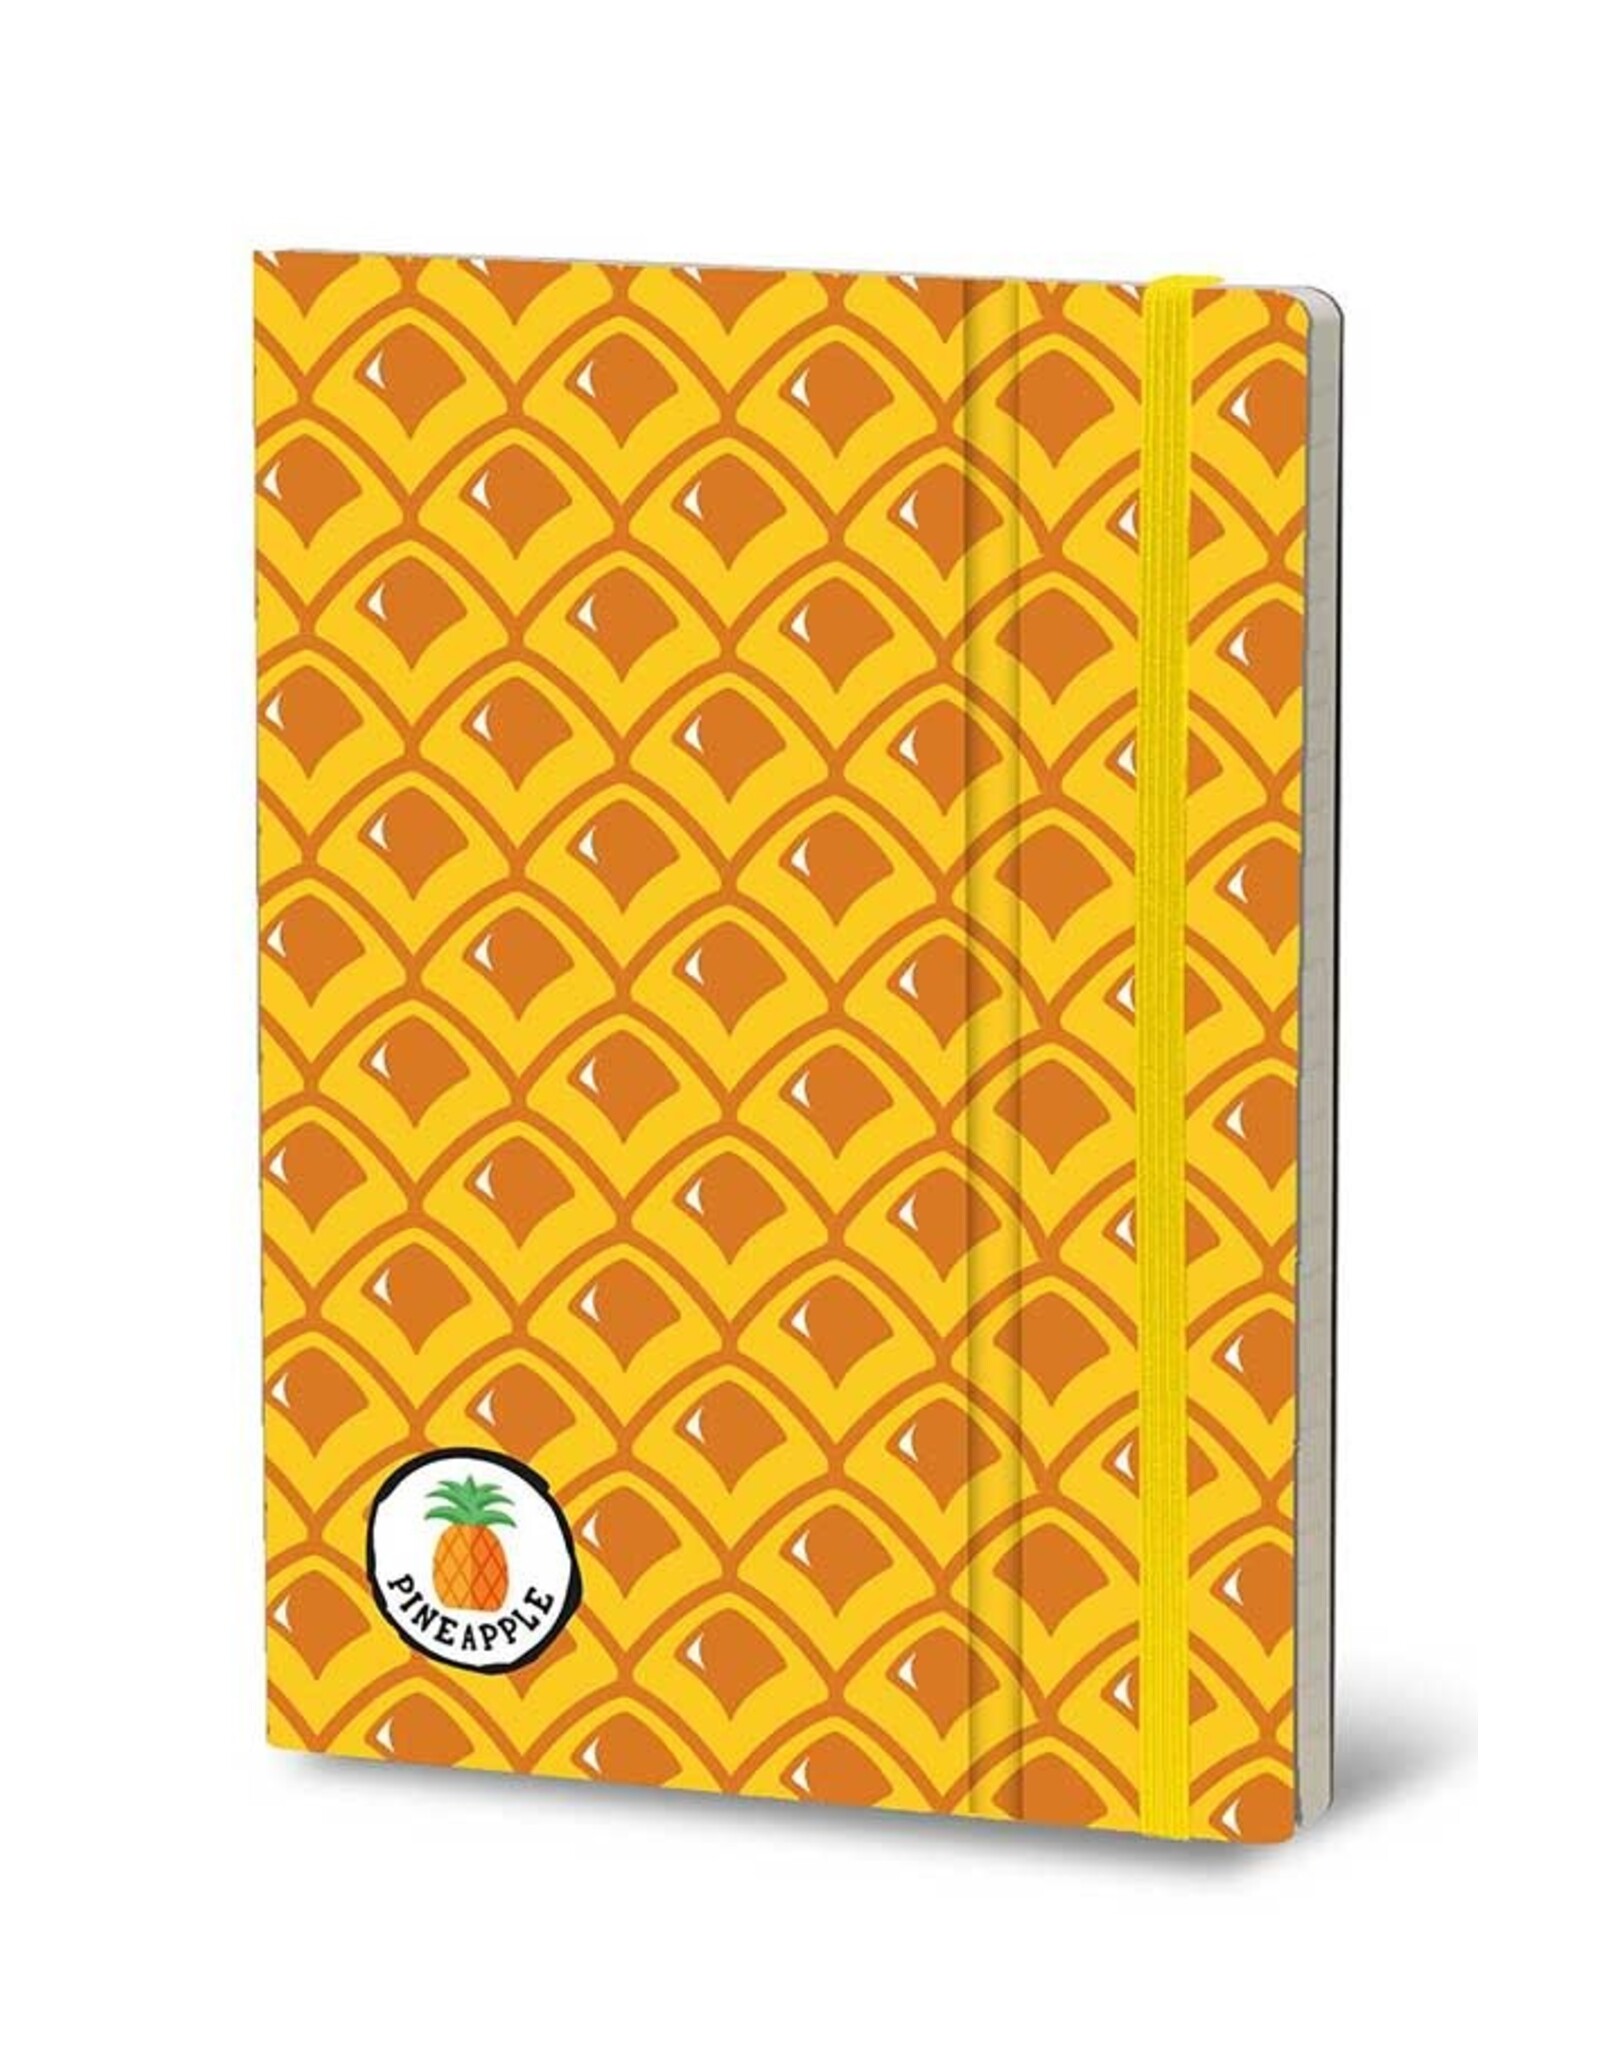 Giuliano Mazzuoli Stifflex Notebook,  15 X 21 Cm, Pineapple